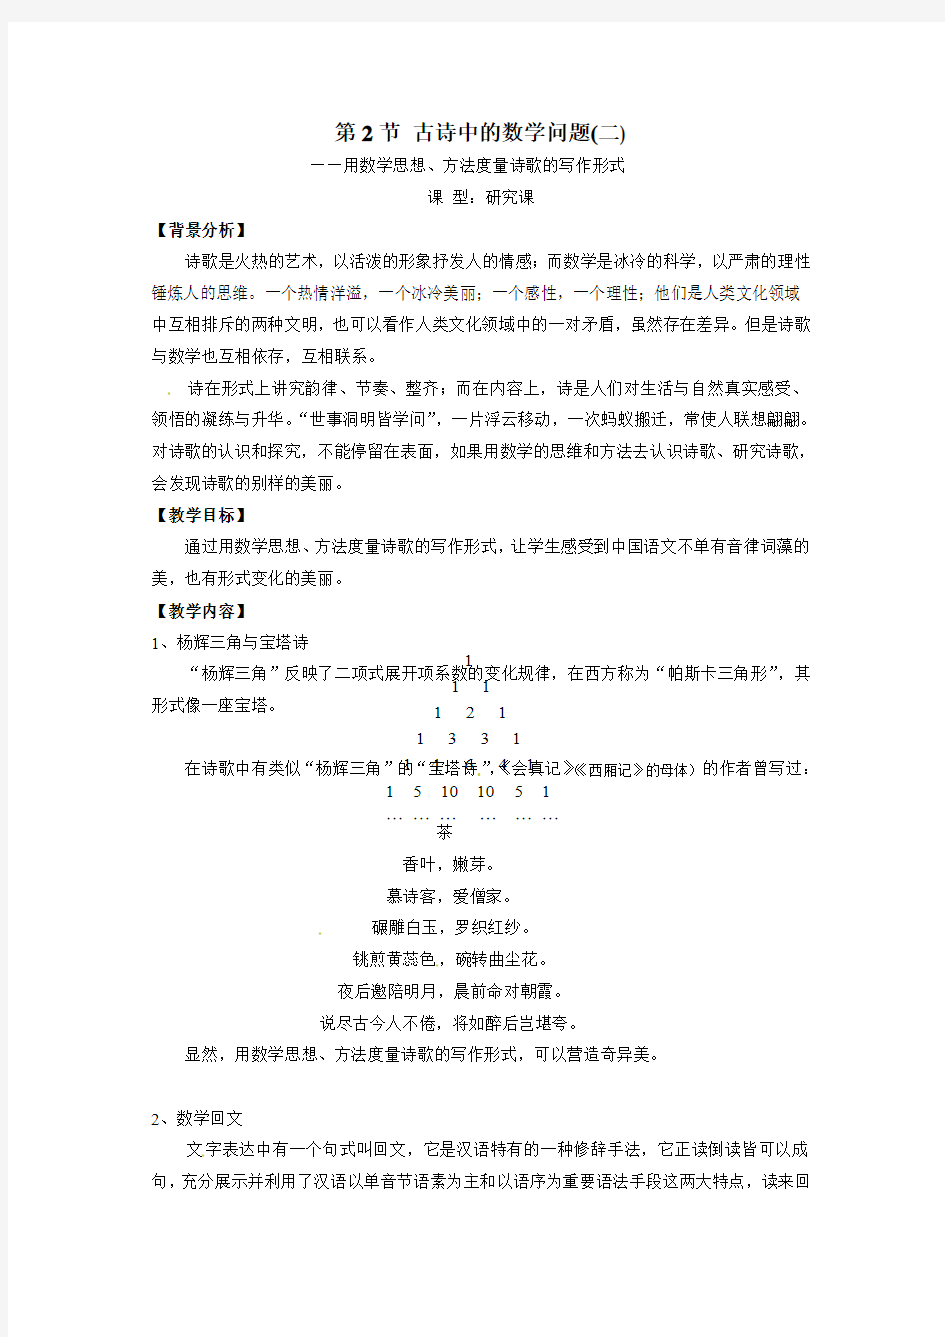 浙江省高中数学选修《生活中的魅力数学》教案 第2节 古诗中的数学问题二